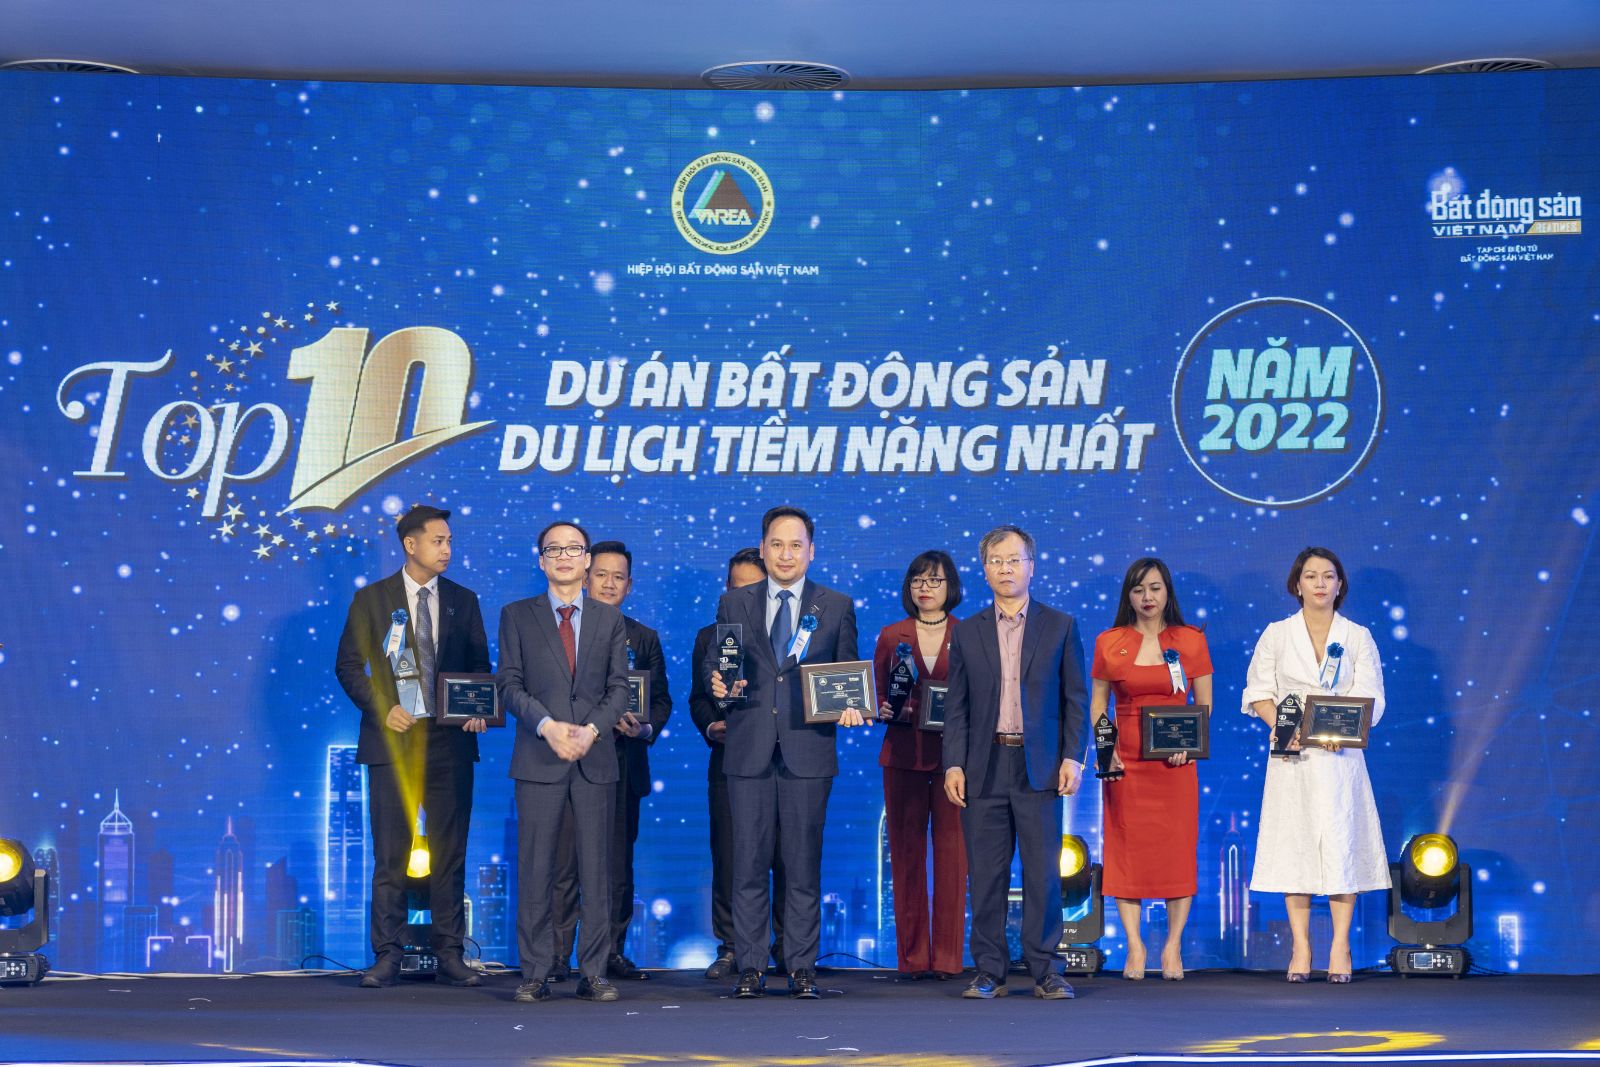 Chủ tịch HĐQT Đỗ Minh Phú, doanh nhân đã dẫn dắt TPBank trở thành ngân hàng nhóm đầu thị trường sau 10 năm.